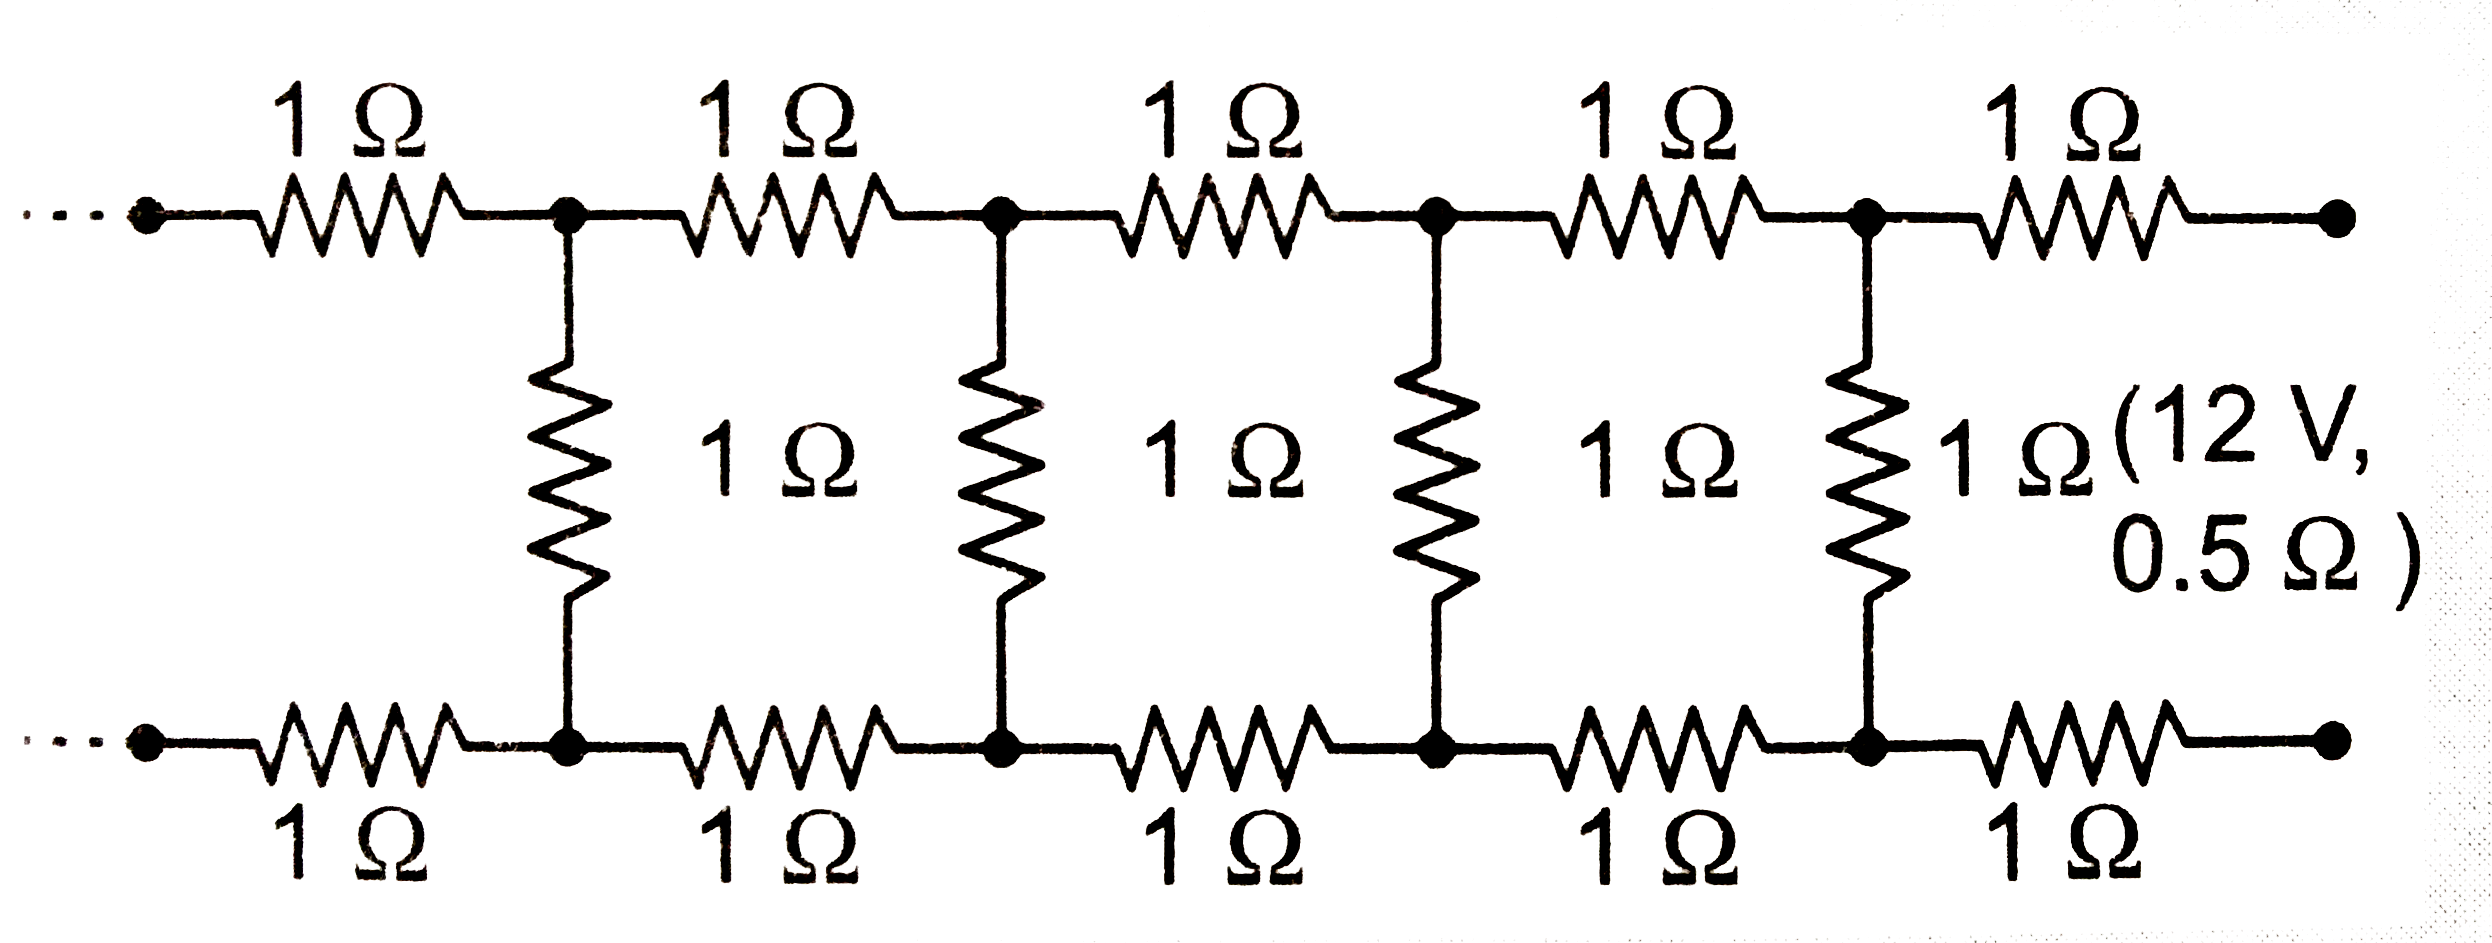 किसी 0.5Omega आंतरिक प्रतिरोध वाले 12V के एक सम्भरण (supply ) के चित्र में दर्शाये गए अनंत  नेटवर्क द्वारा ली गयी धरा का मान ज्ञात कीजिये । प्रत्येक प्रतिरोध का मान 1Omega है